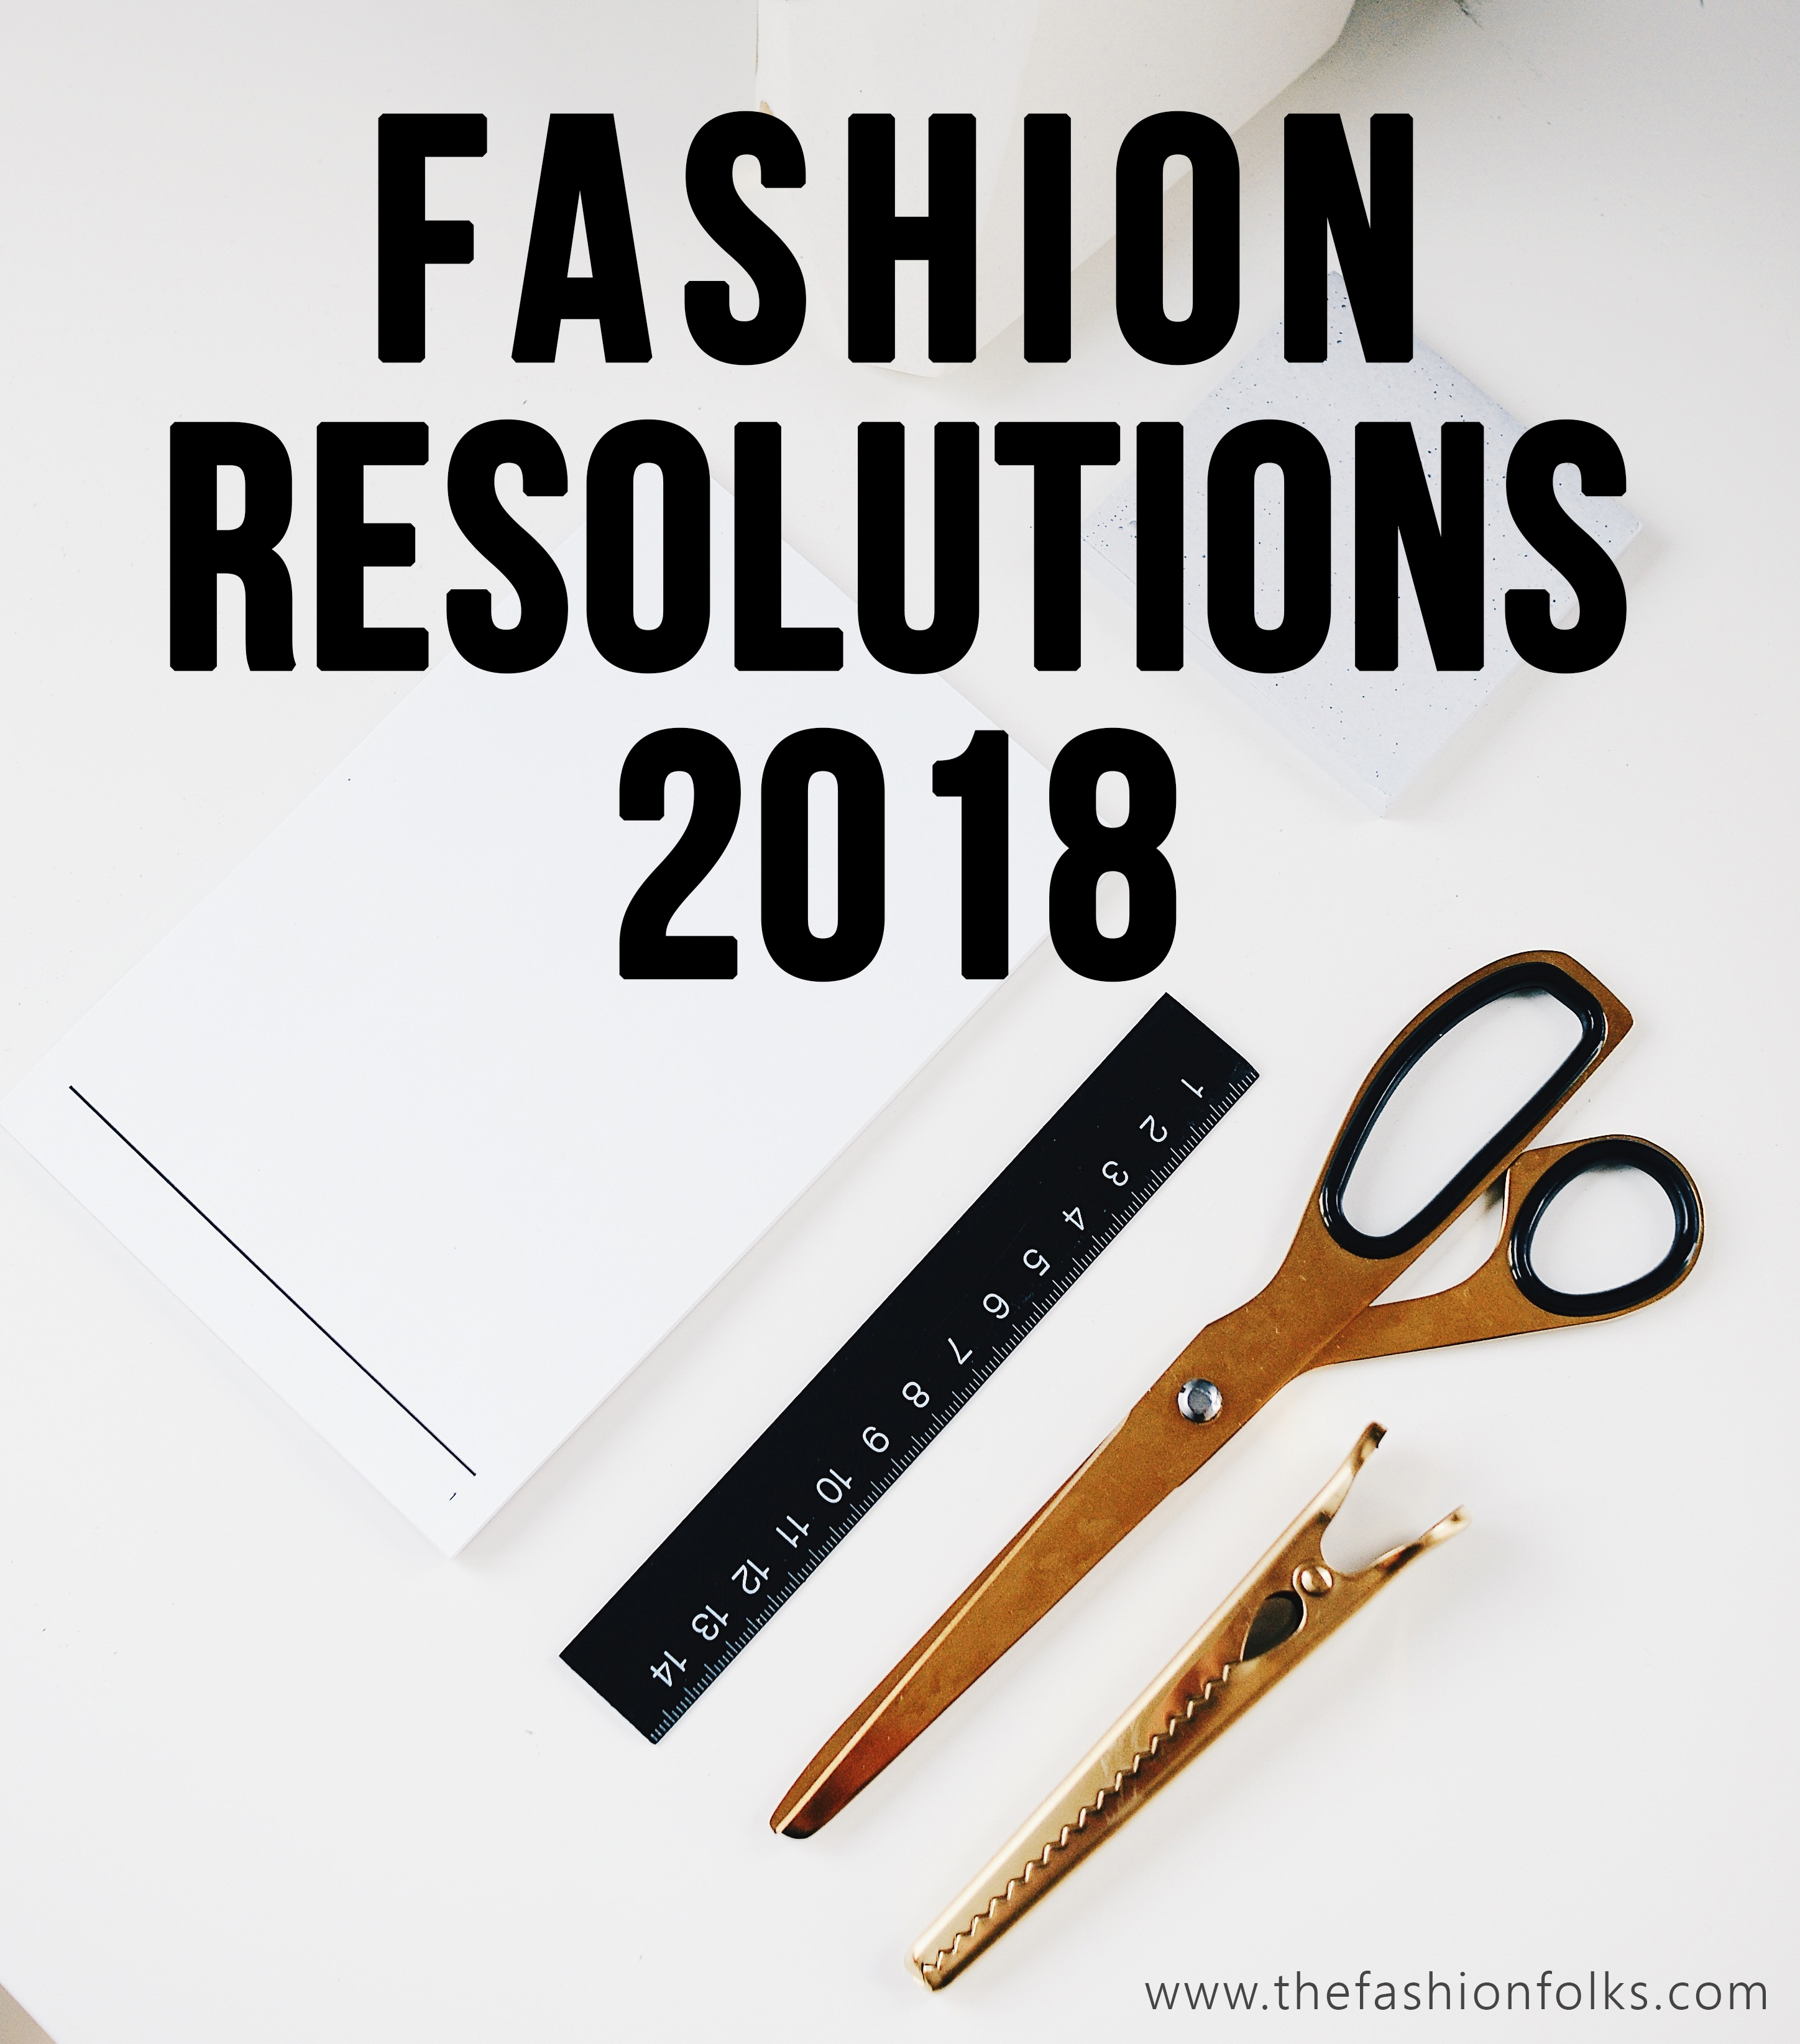 Fashion Resolutions 2018